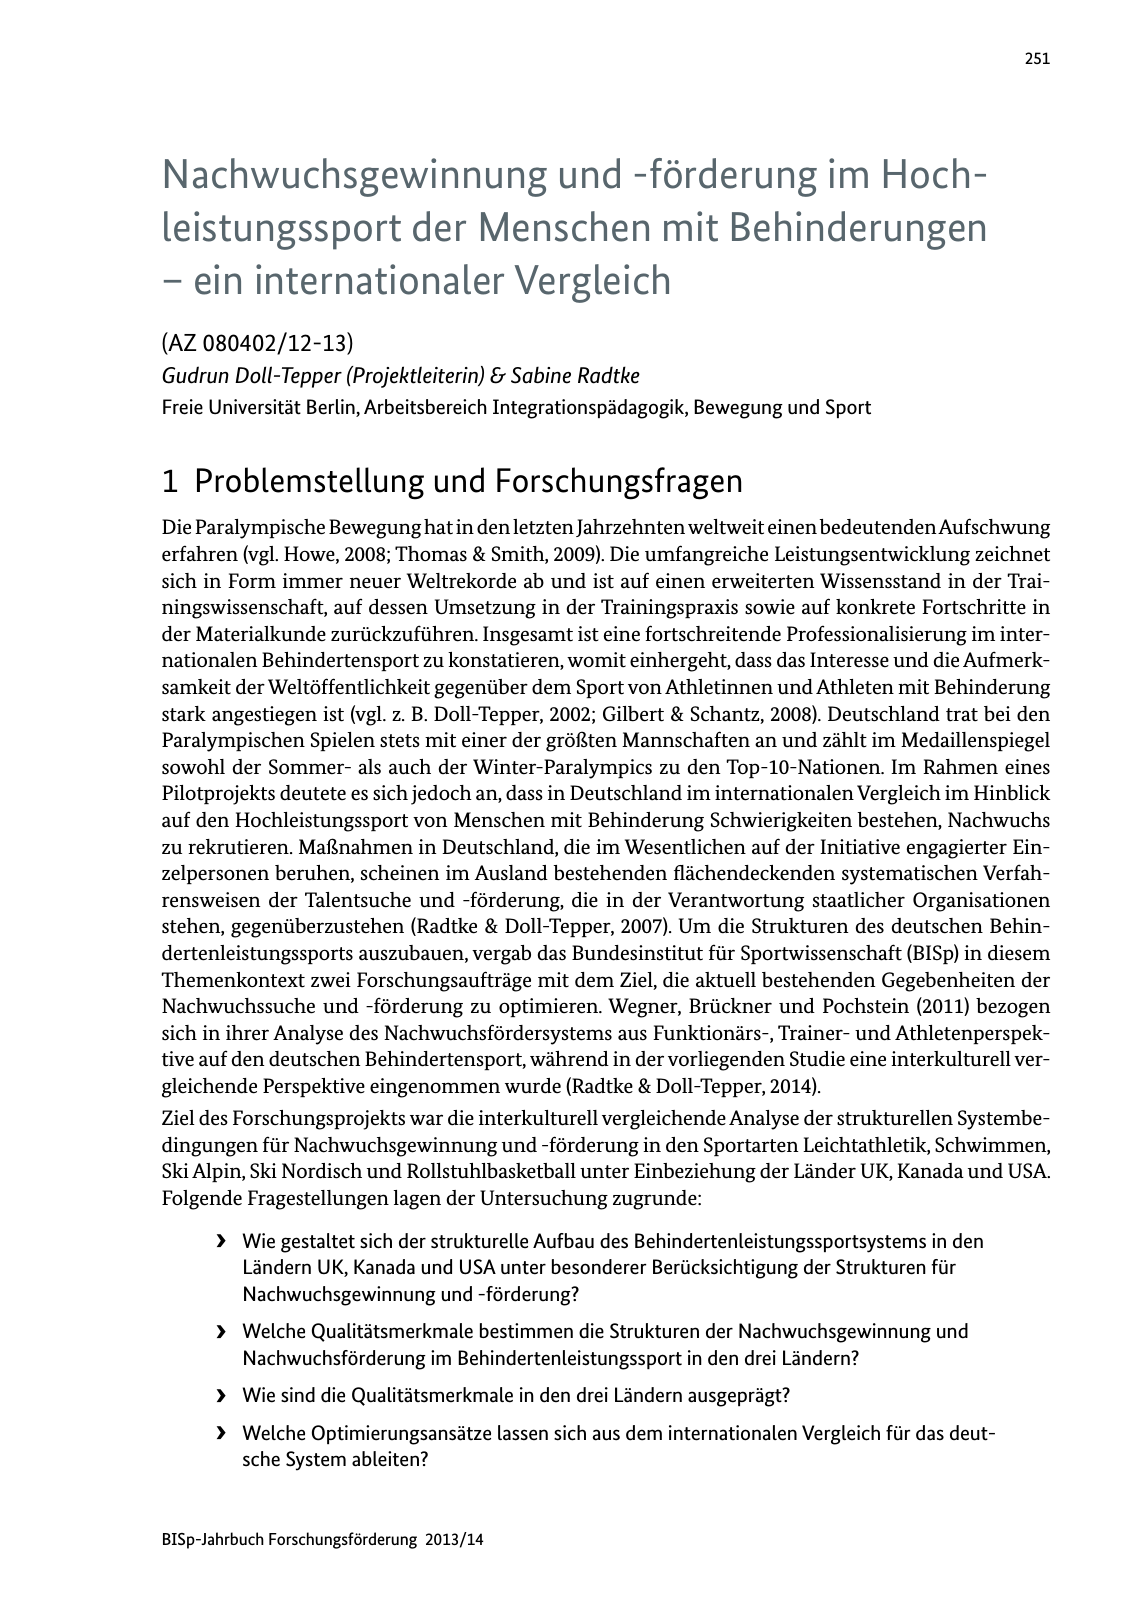 Vorschau BISp-Jahrbuch Forschungsförderung 2013/14 Seite 252